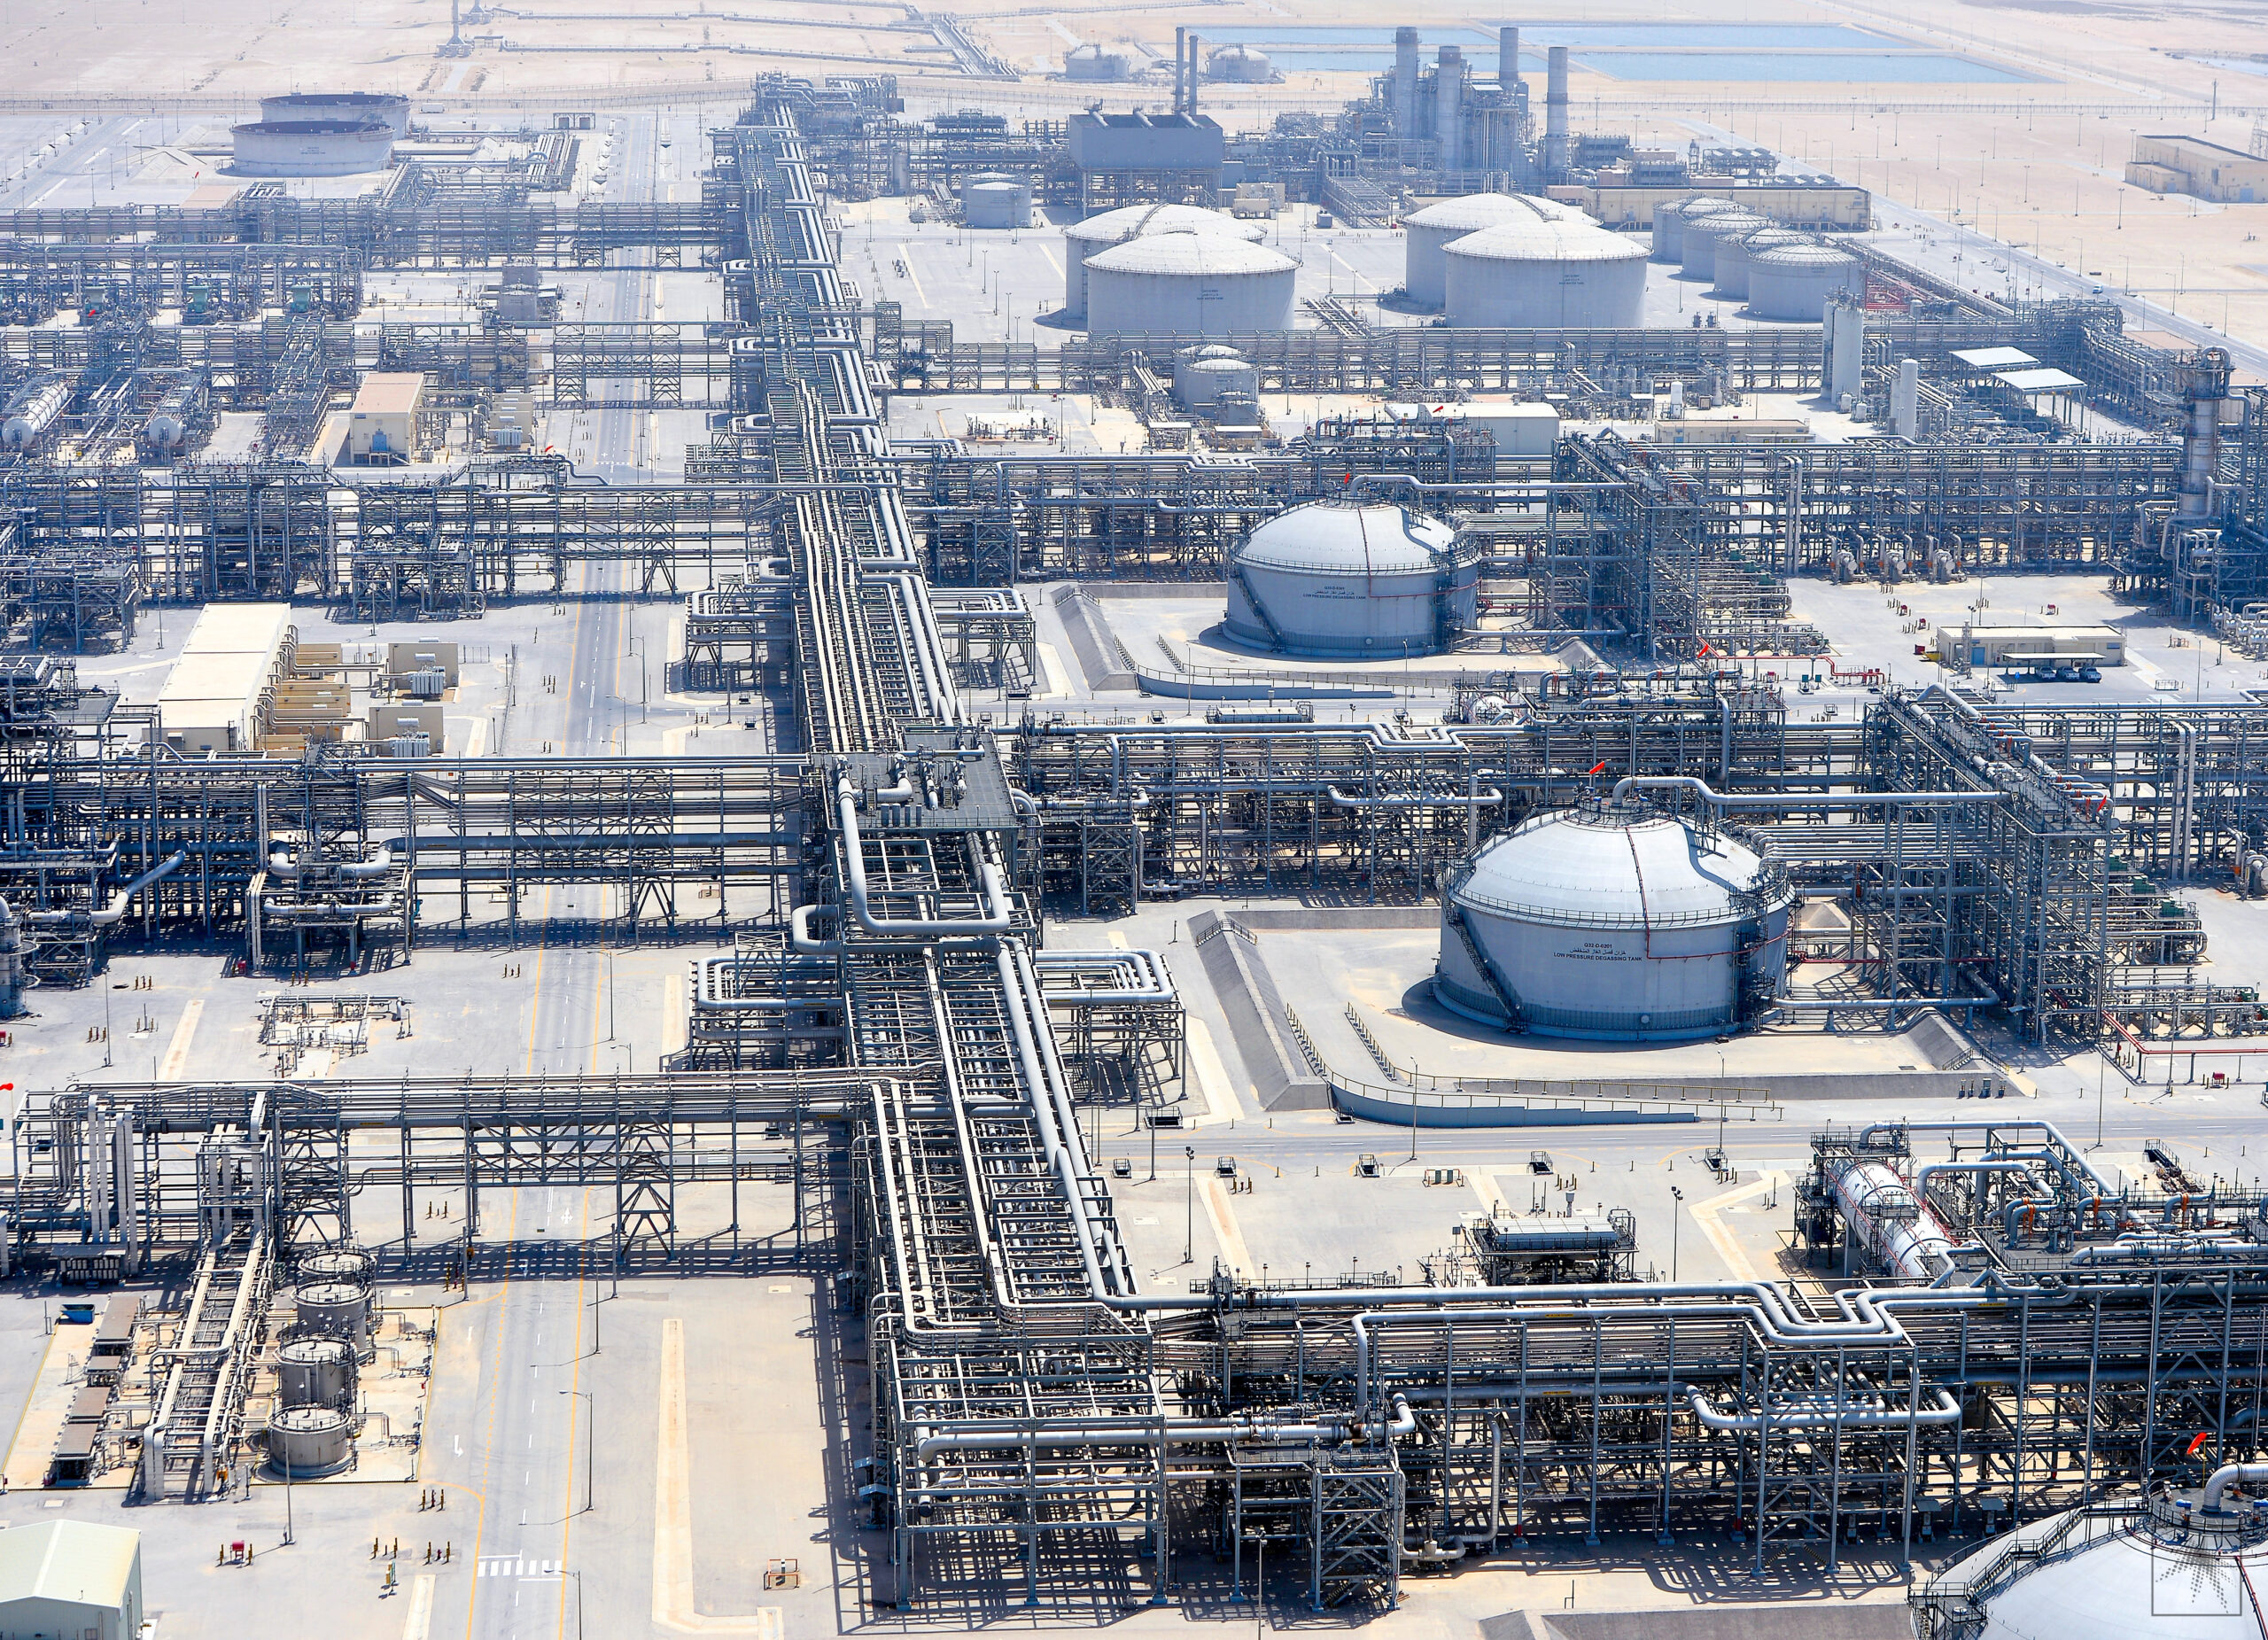 Cei mai mari producători de petrol din lume - instalația Saudi Aramco.  Sursa: Saudi Aramco